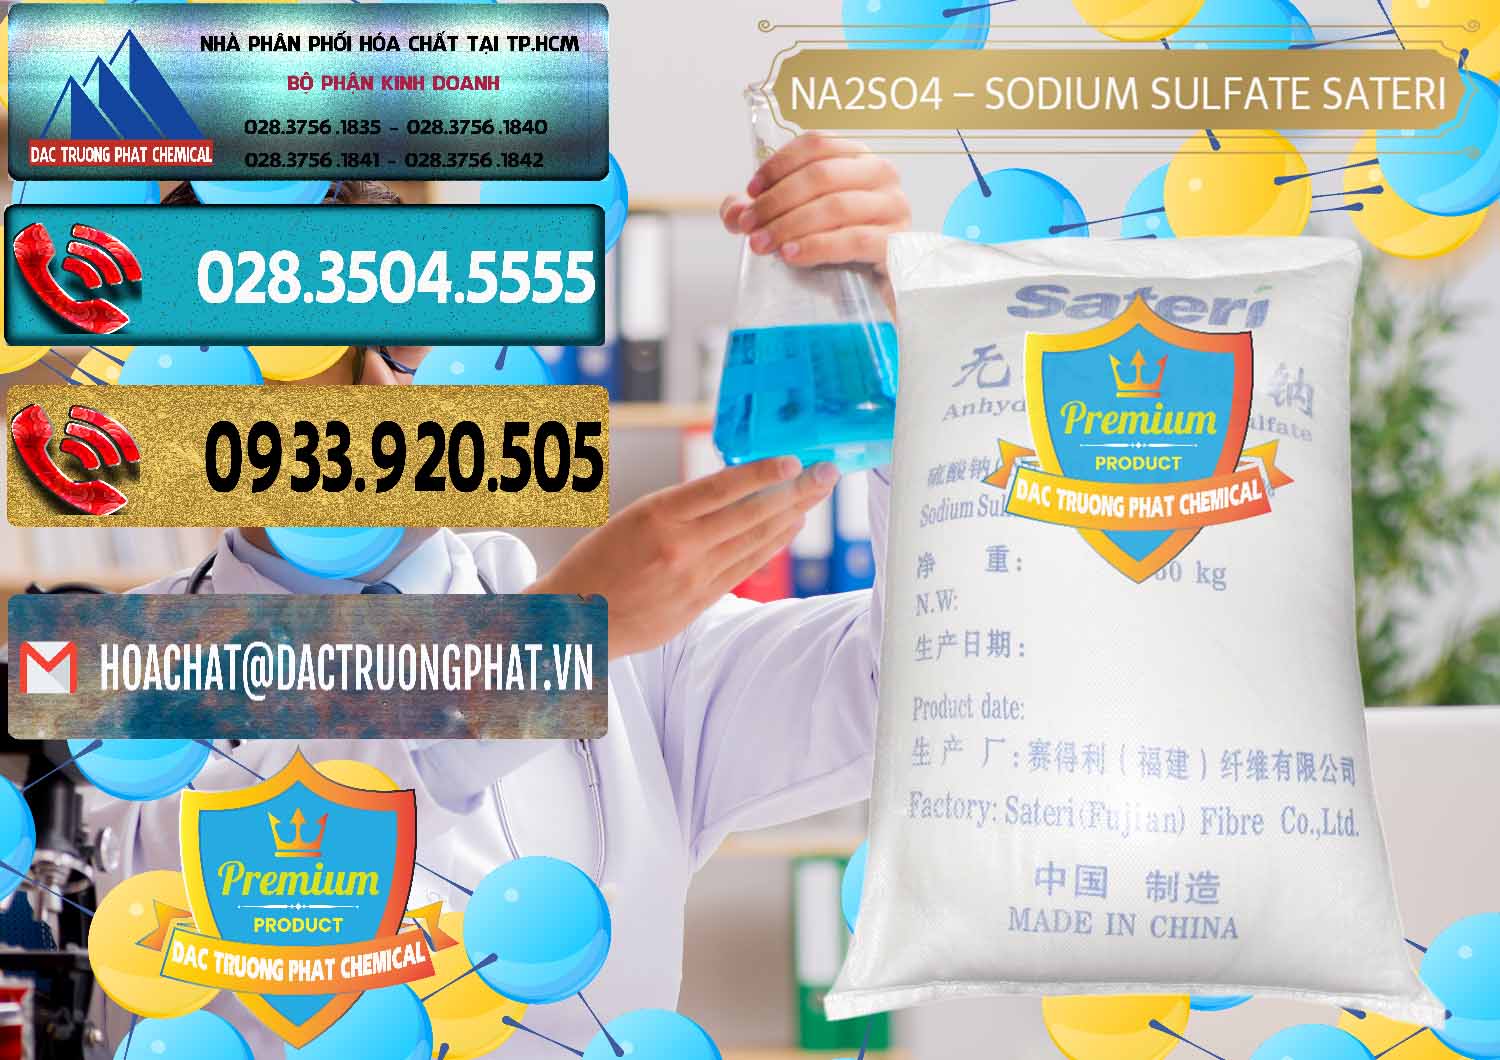 Nhà cung ứng _ bán Sodium Sulphate - Muối Sunfat Na2SO4 Sateri Trung Quốc China - 0100 - Công ty kinh doanh _ cung cấp hóa chất tại TP.HCM - hoachatdetnhuom.com